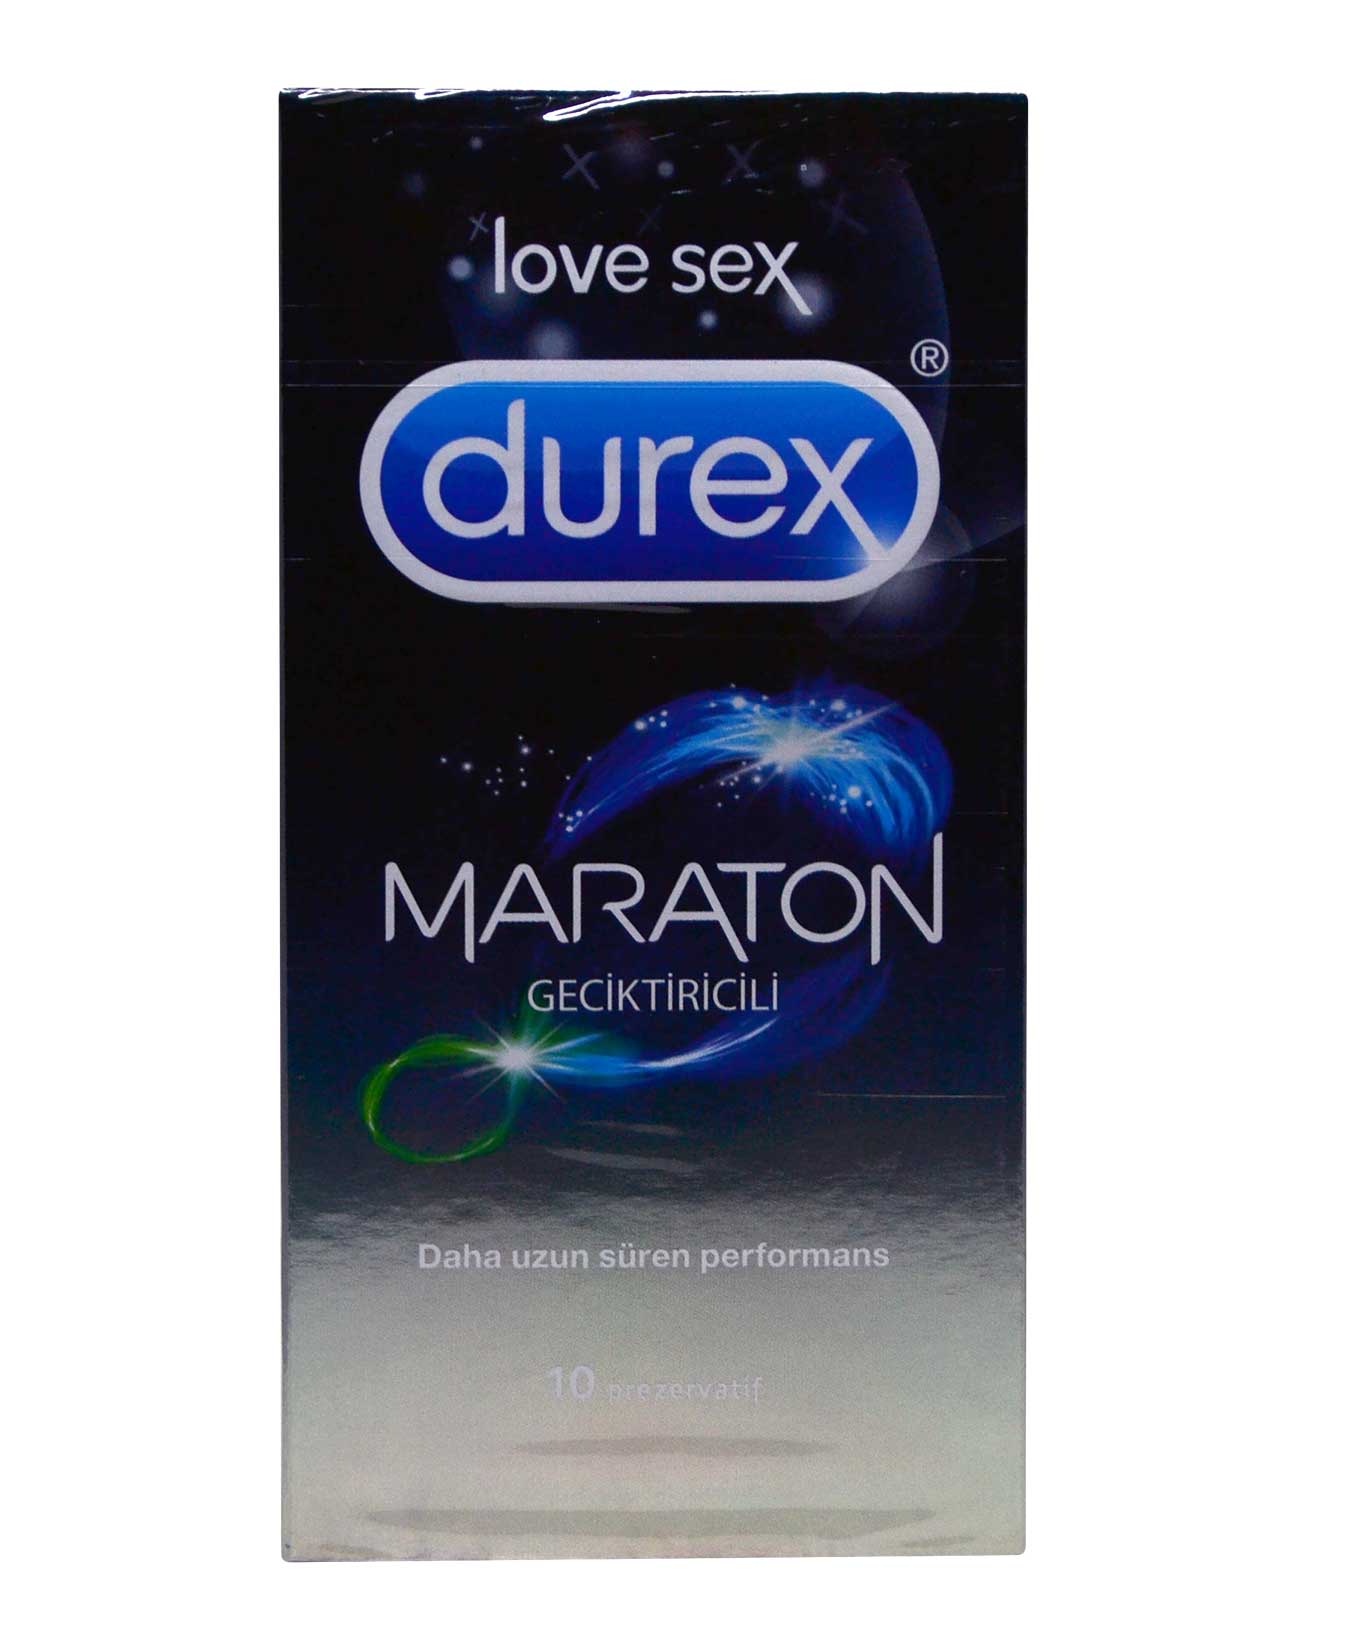 Durex Prezervatif 10'lu Maraton Geciktirici 8690570548440